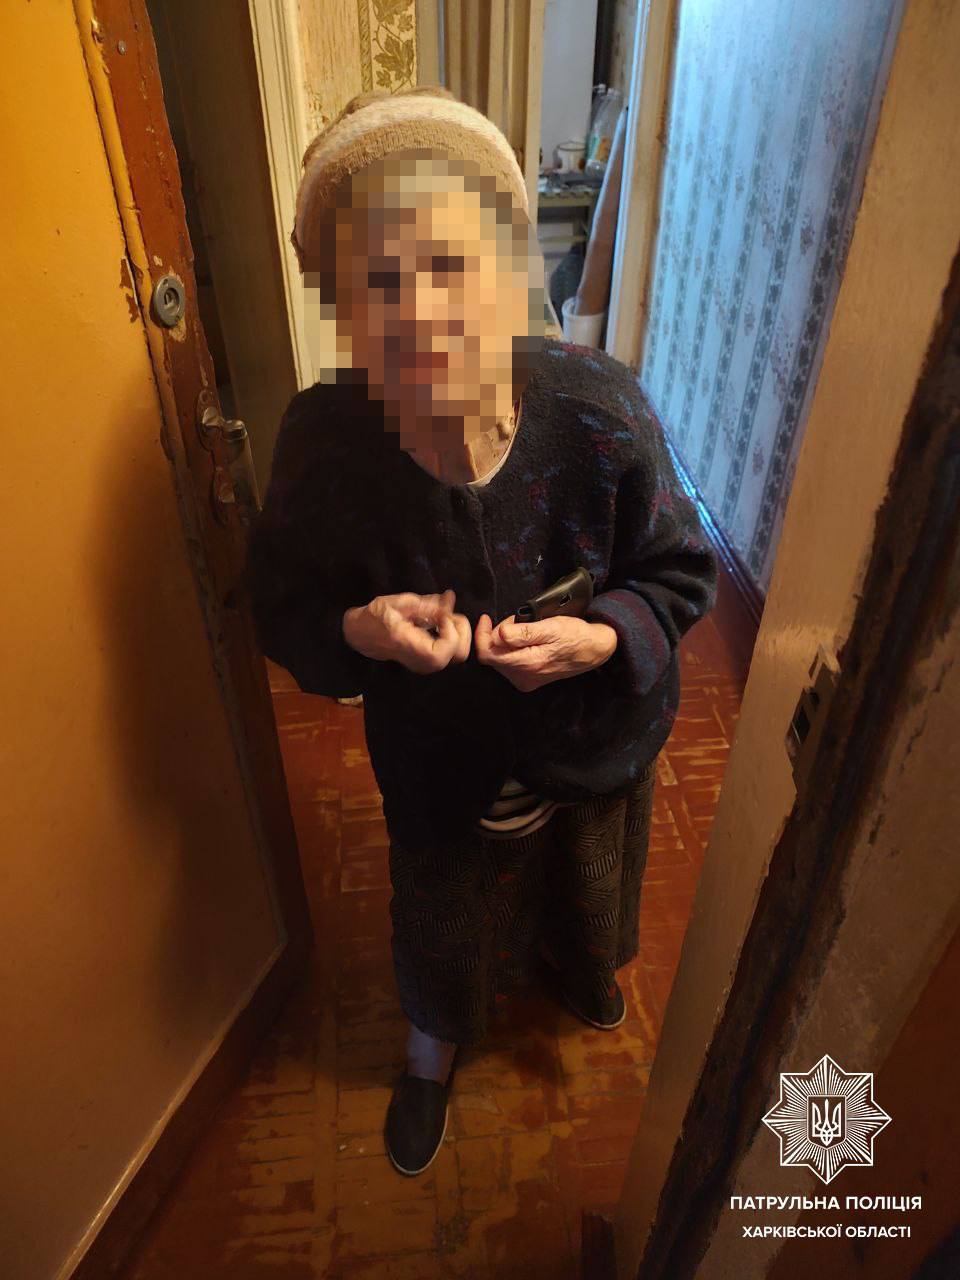 Бабушка была заперта в квартире в Харькове